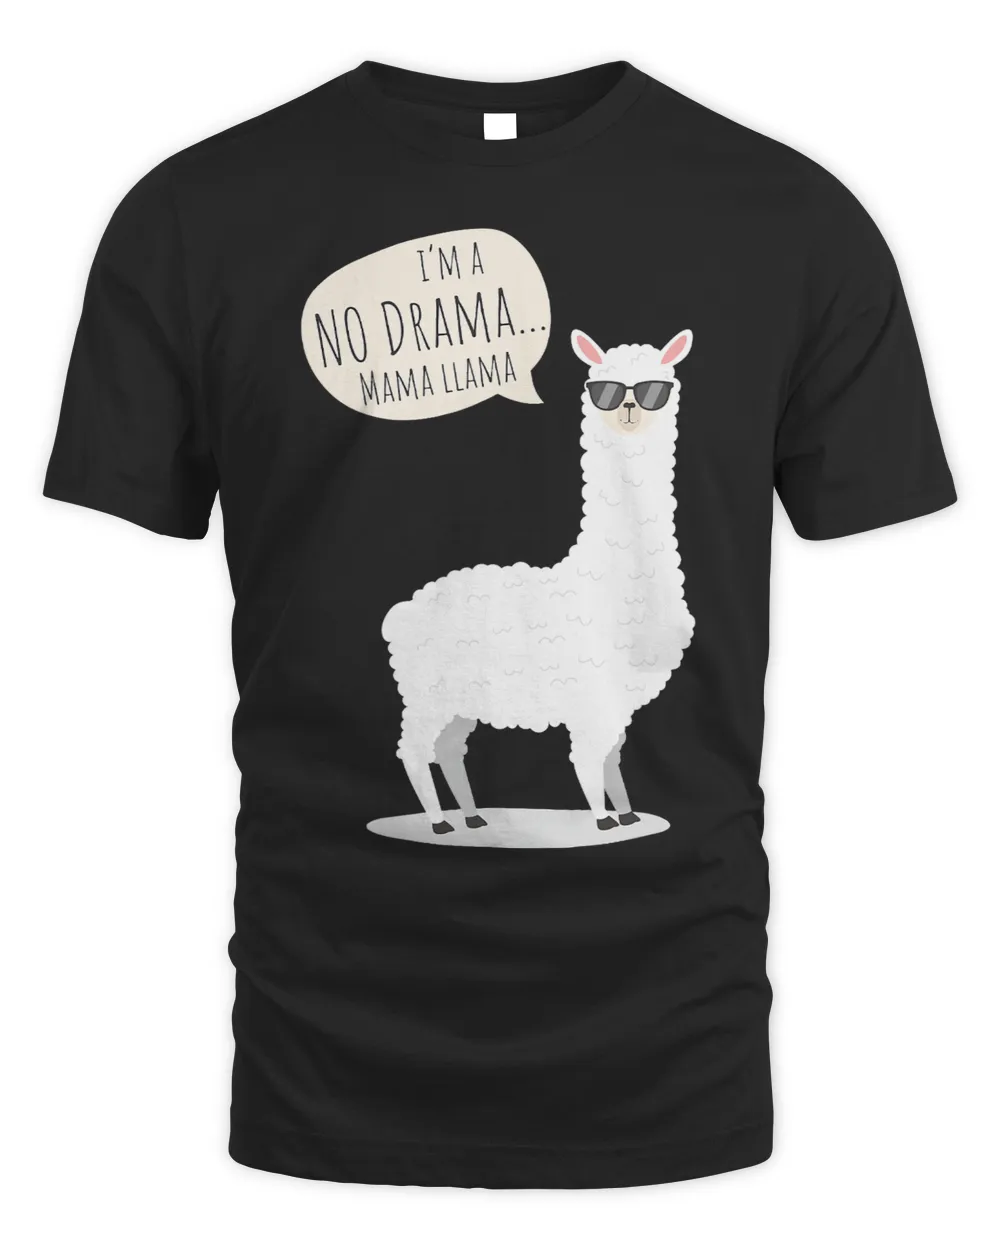 Lama Llama Funny Mama Llama No Drama Alpaca